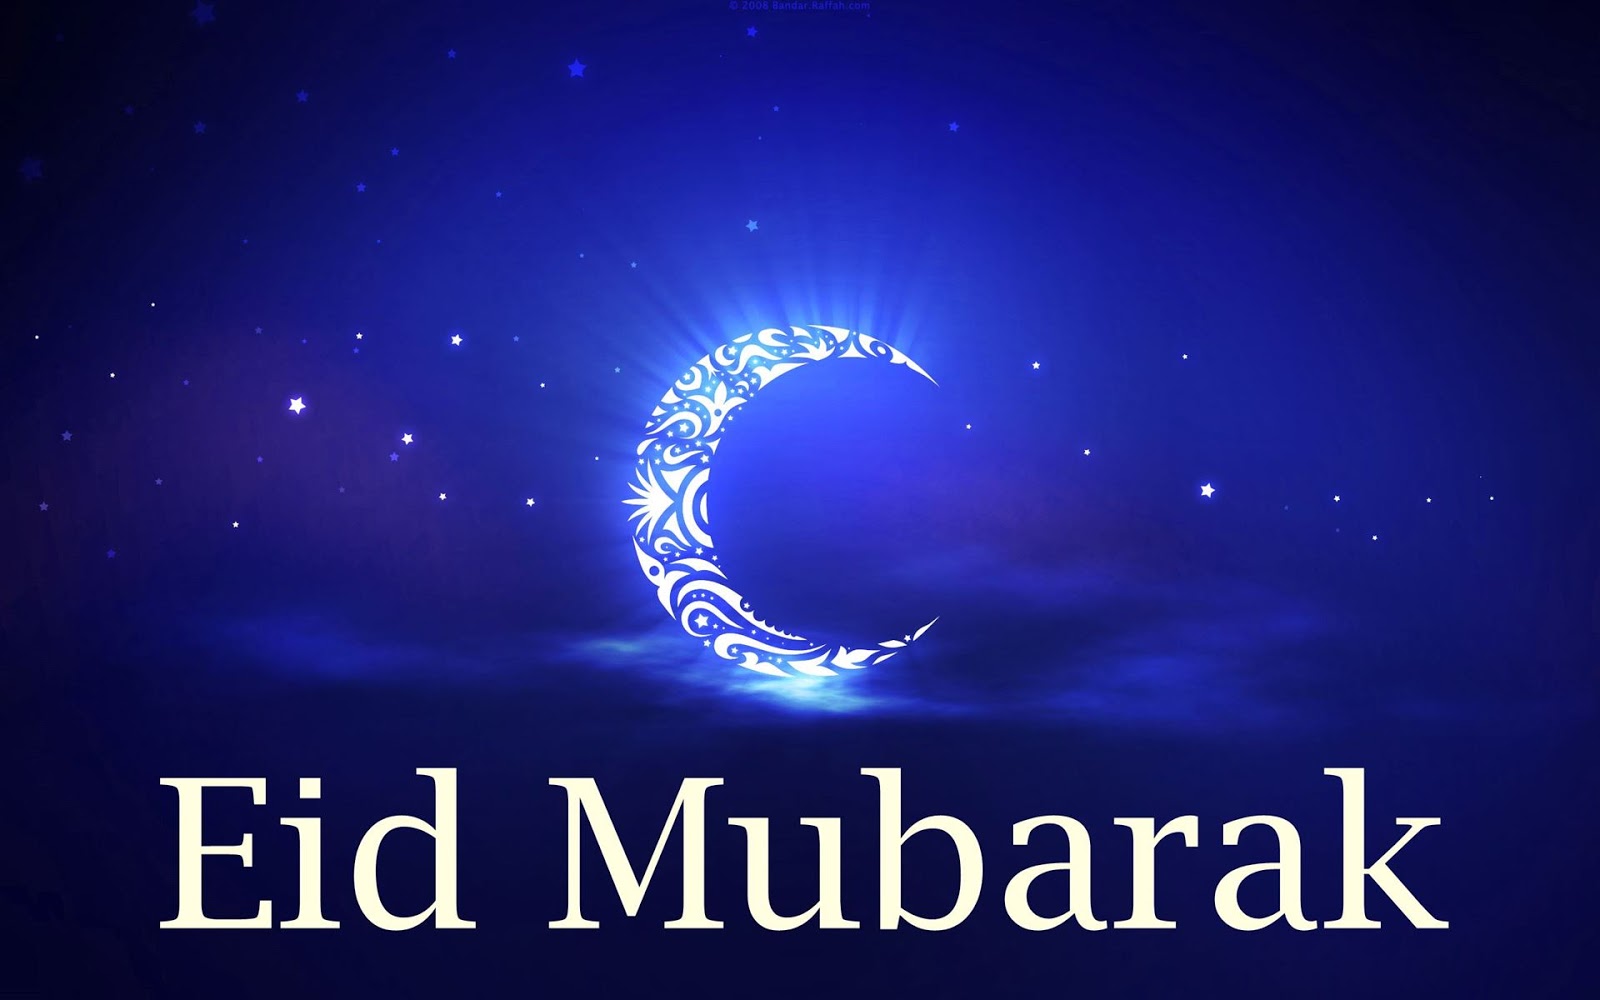  Advance Eid Mubarak Images Download free  Images SRkh